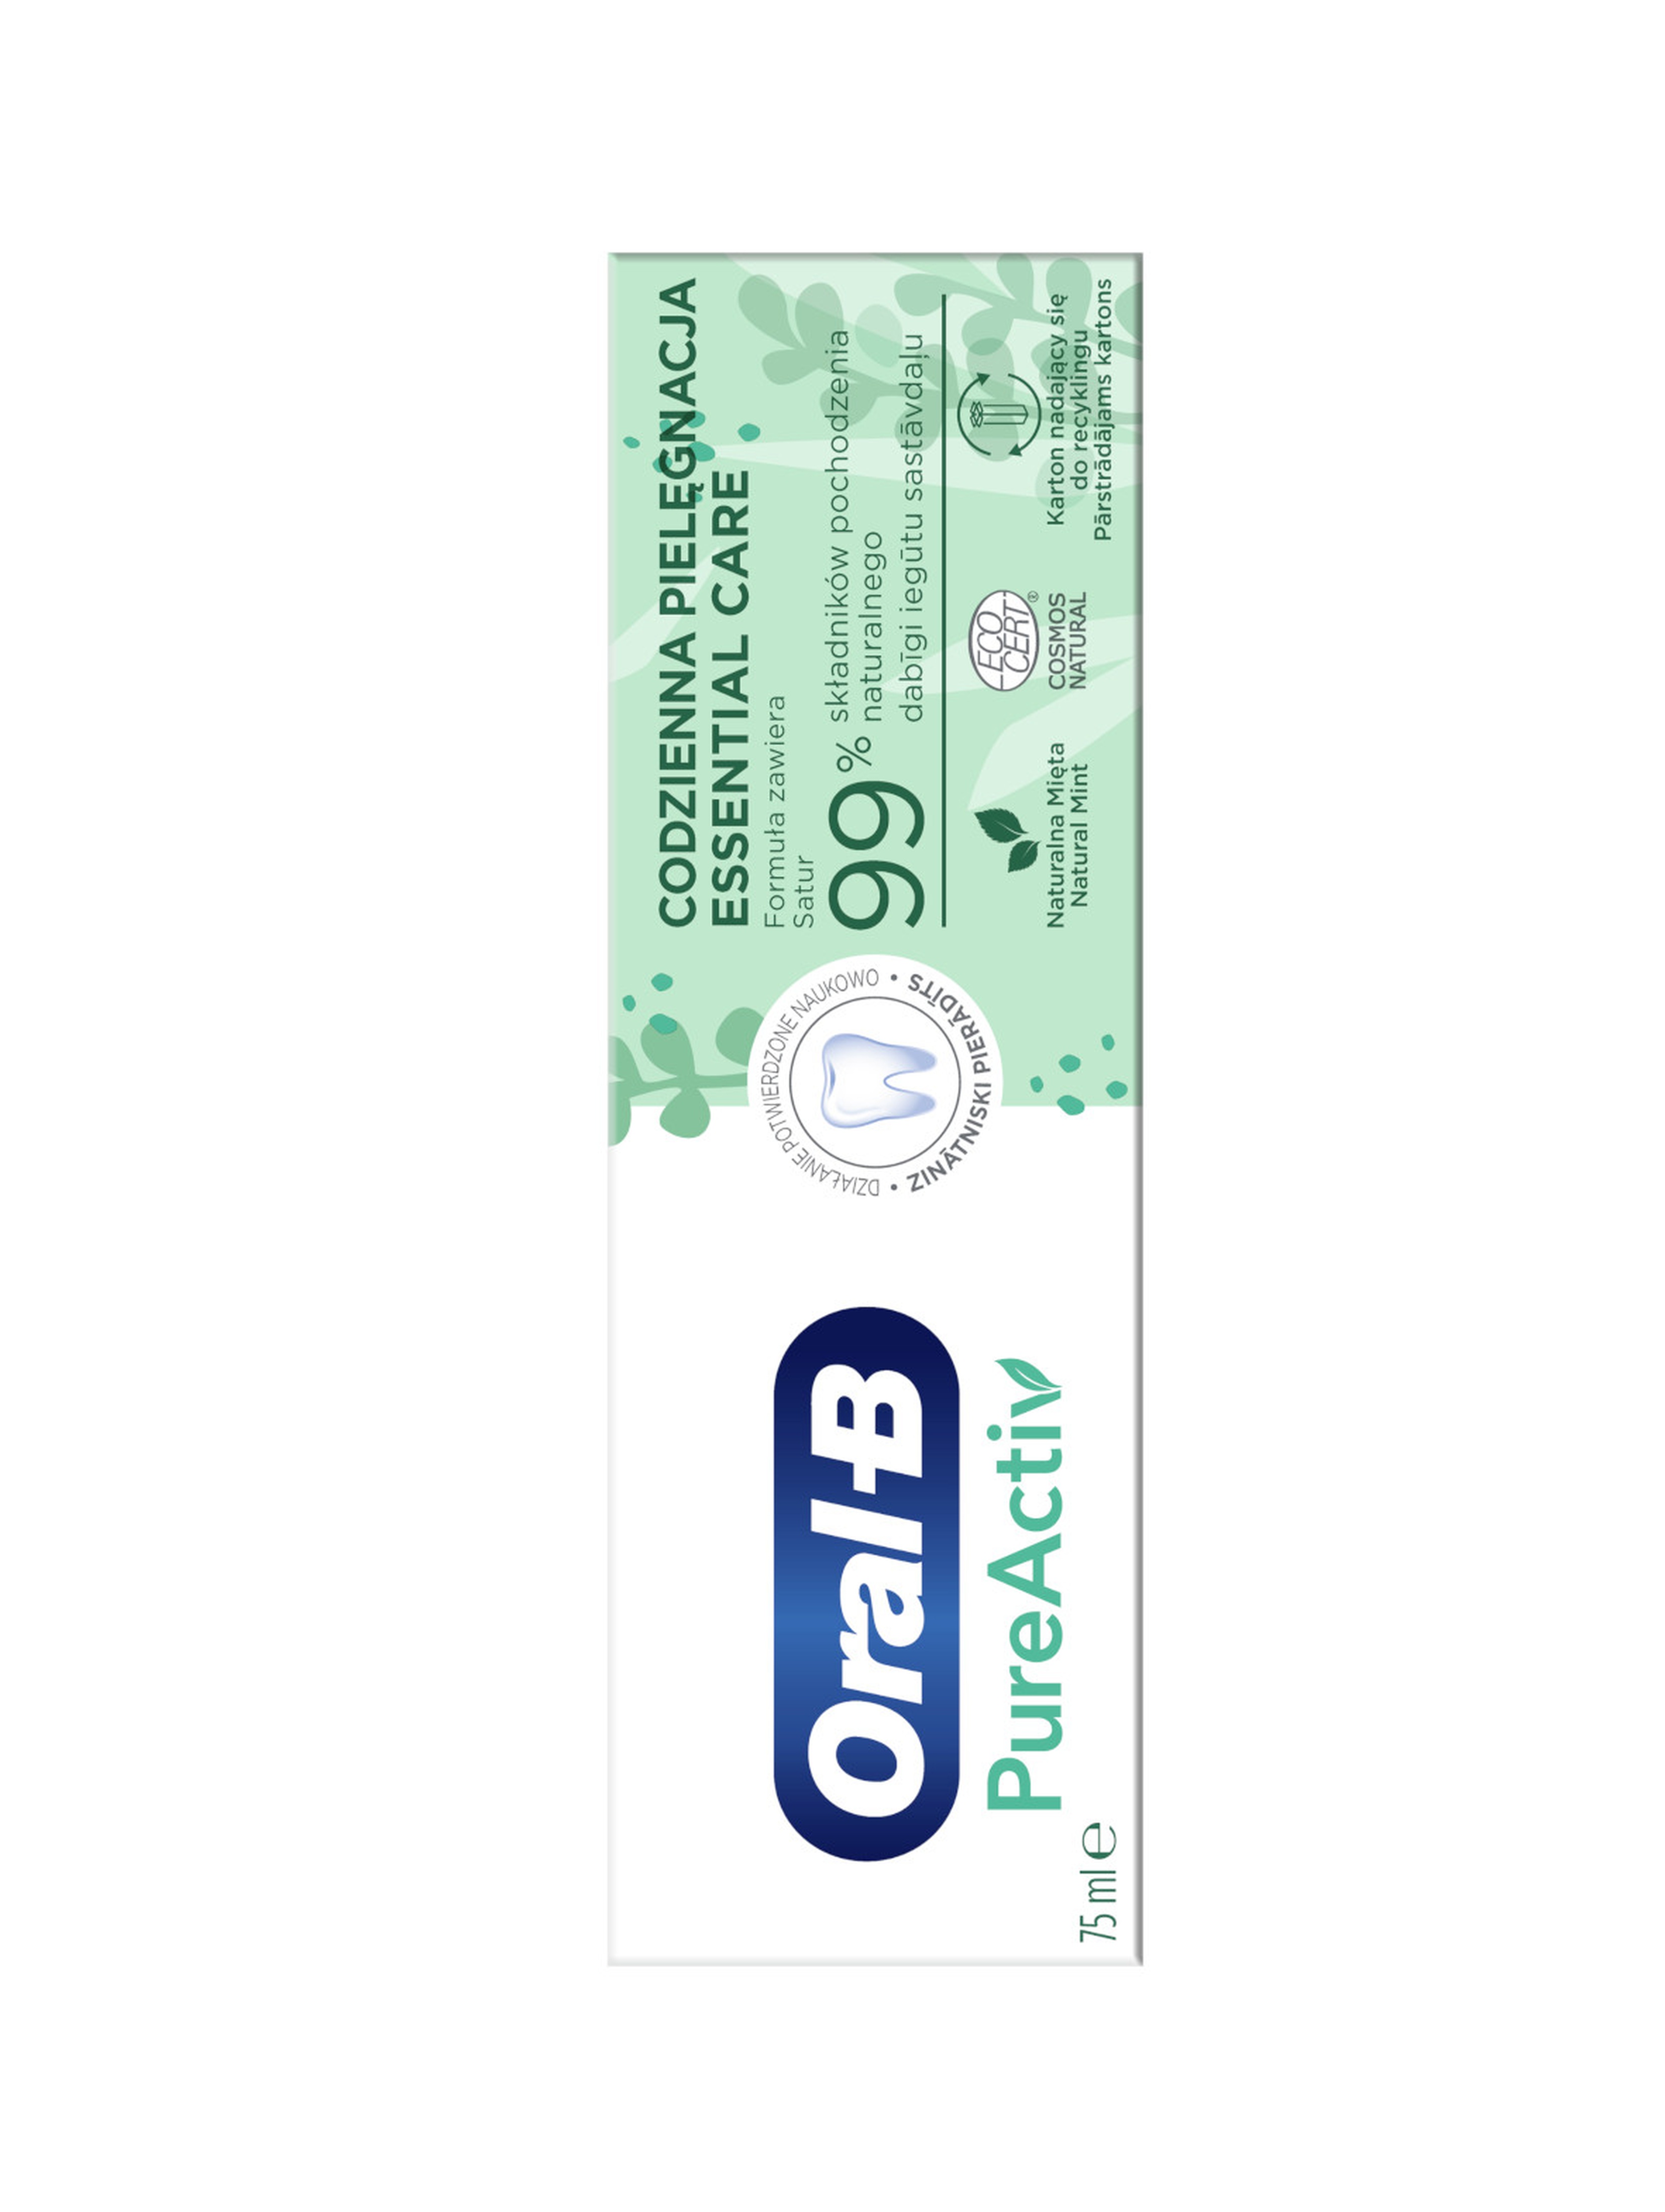 OralB pasta Pureactiv Essentialcare 75ml